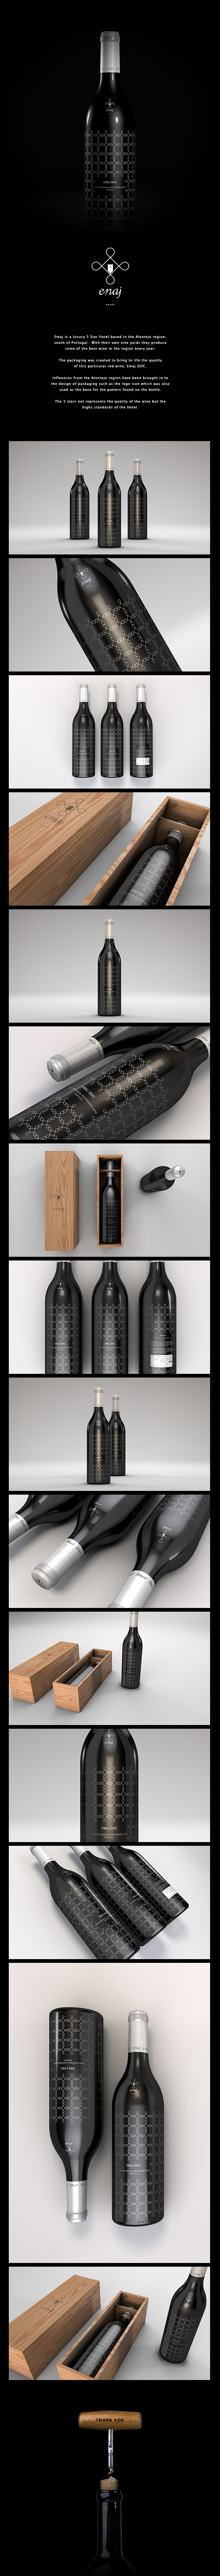 wine Red wine bottle grapes alentejo hotel vines wine box Wine Bottle black bottle pattern